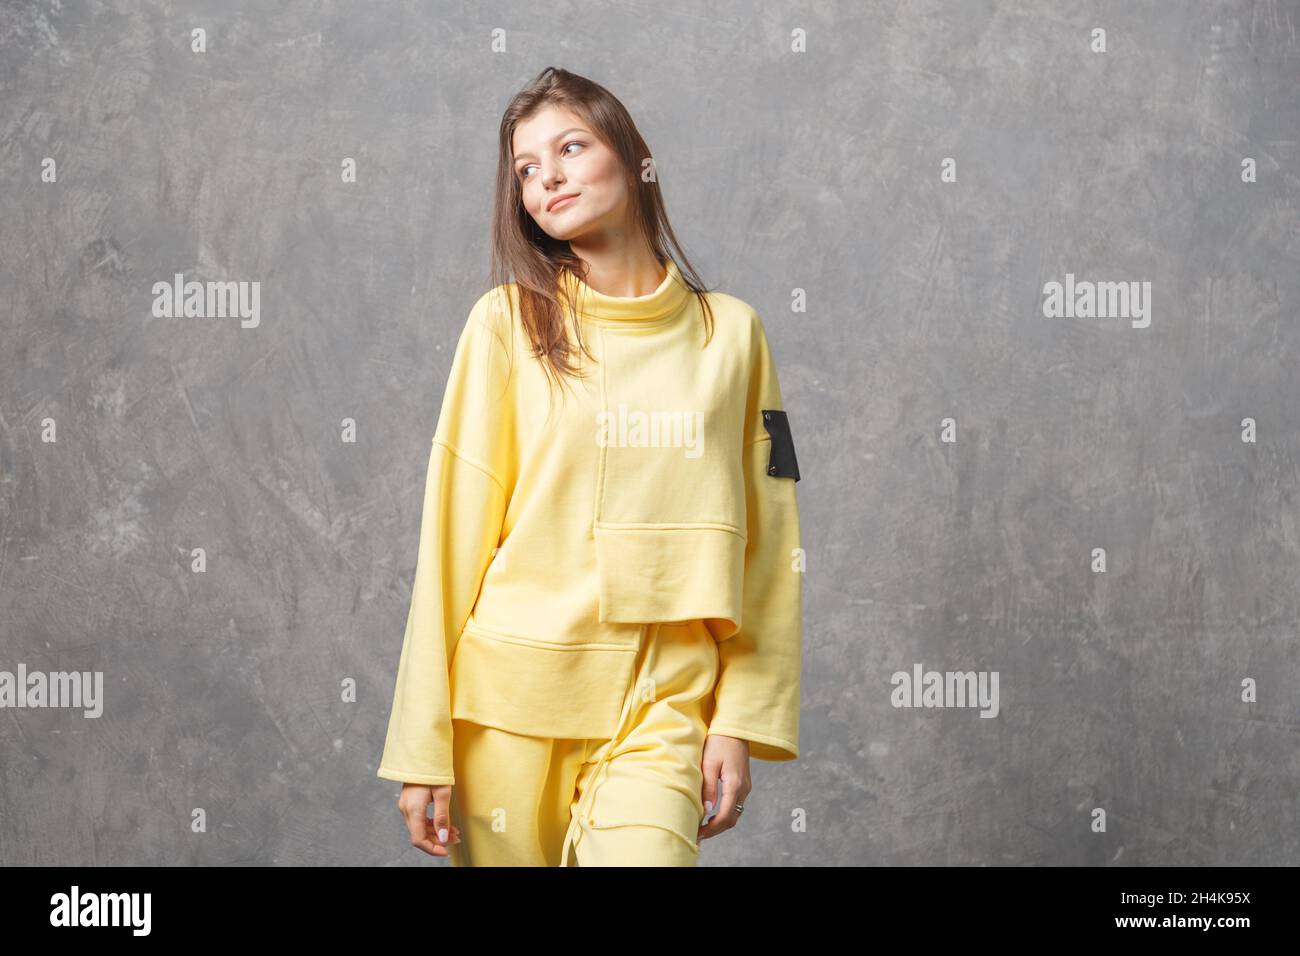 Junge Frau in gelber Sportbekleidung, Hose und Sweatshirt. Konzept der modischen Sport-Outfit, drinnen Foto. Speicherplatz kopieren. Stockfoto